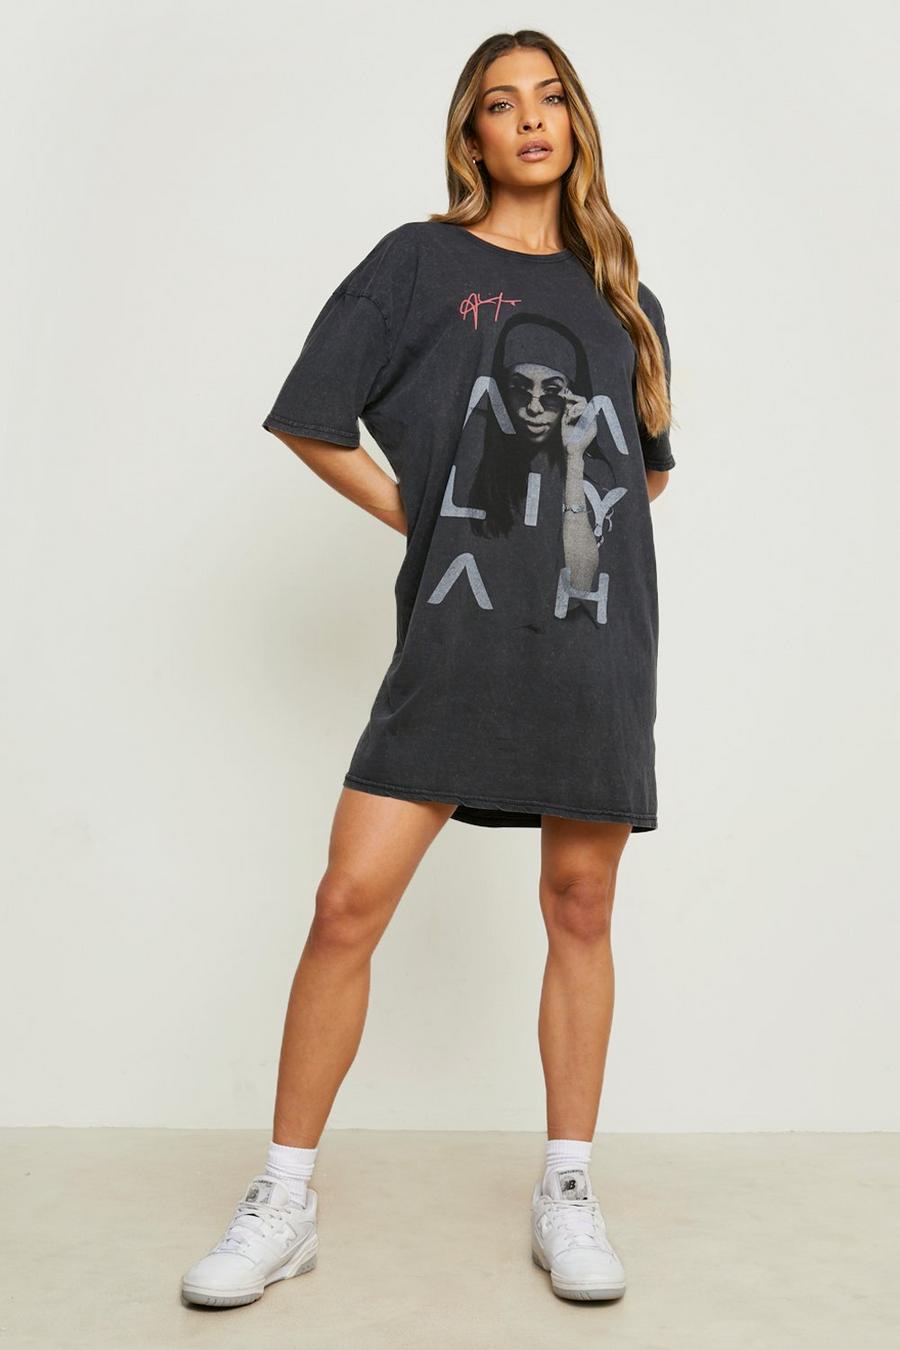 Charcoal grå Aaliyah License Print T-shirt Dress